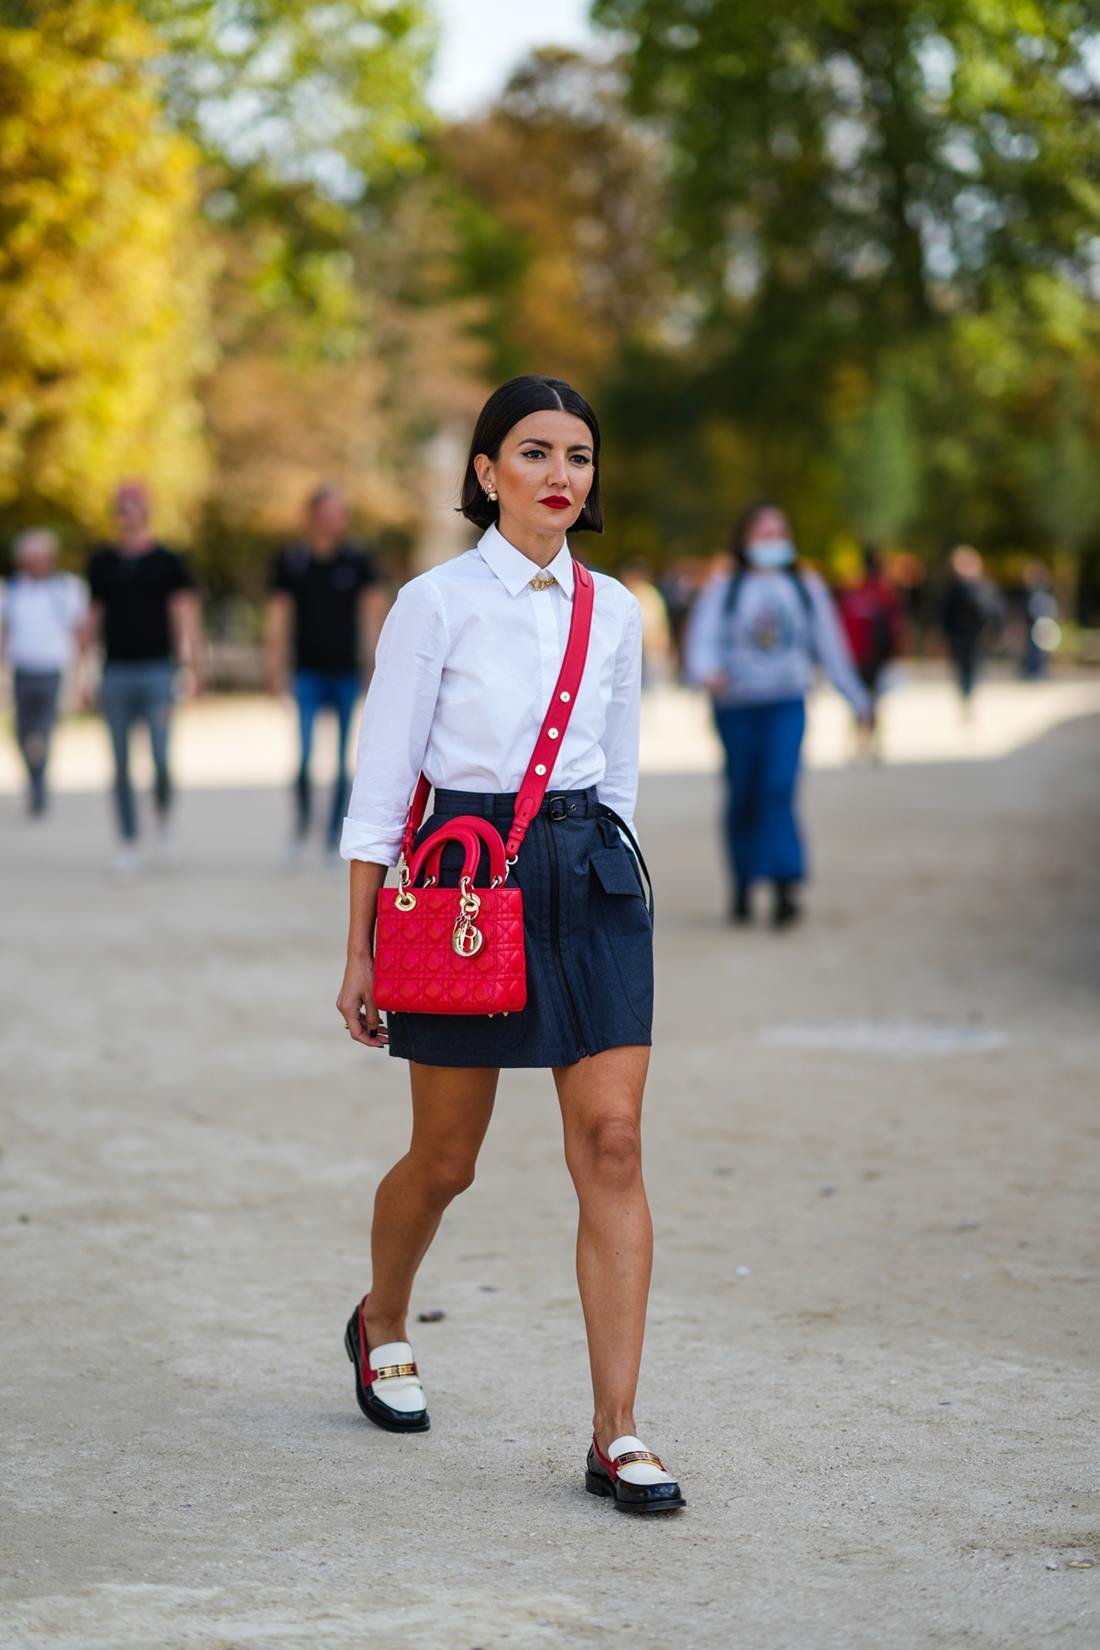 Uma mulher branca e jovem, de cabelo preto curto e liso, anda pelas ruas de Paris durante a Semana de Moda em 2021. Ela usa uma camisa branca de botão, uma saia preta curta, uma bolsa vermelha modelo Lady Dior, da marca Dior, e um sapato mocassim de couro preto e branco. - Metrópoles